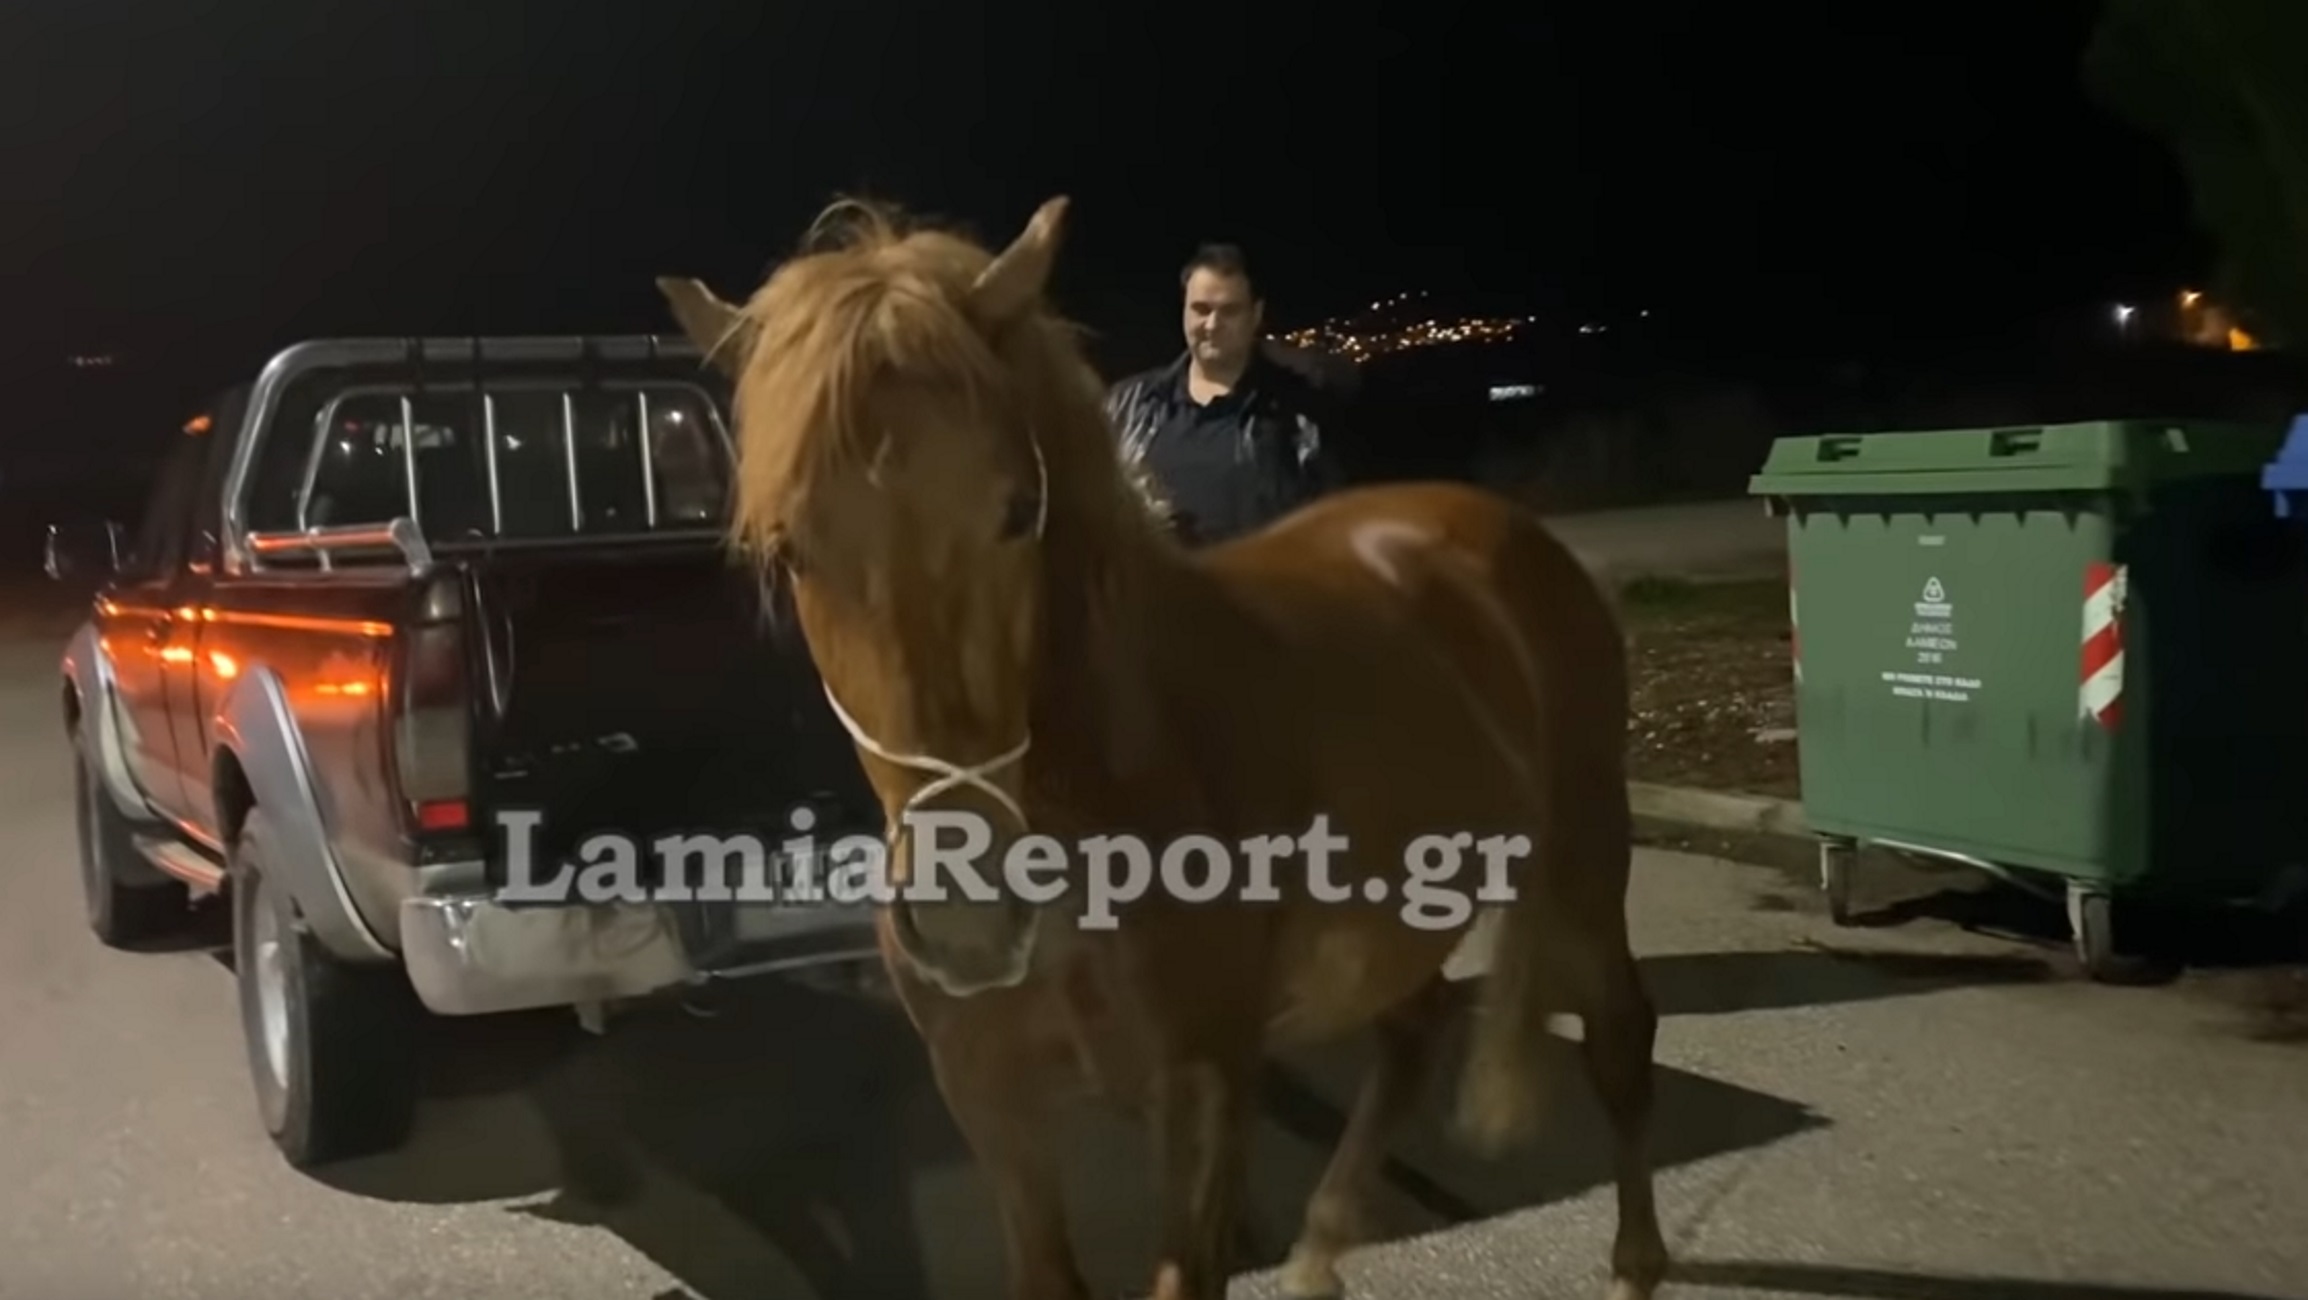 Λαμία: Κυνηγούσαν αυτό το άλογο μέσα στην πόλη – Απίθανες εικόνες για να αποτραπεί τροχαίο